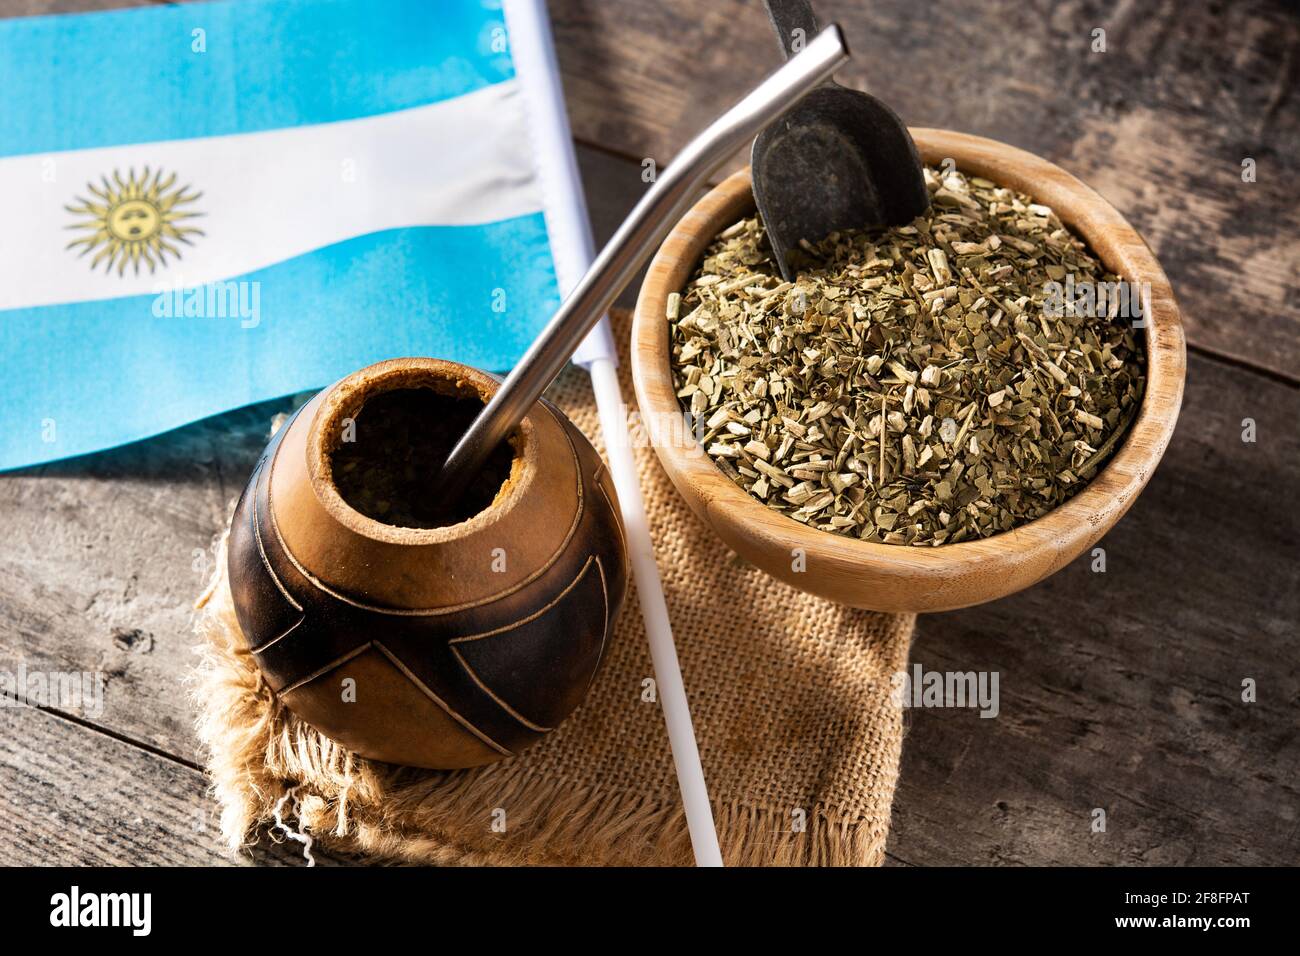 https://c8.alamy.com/compes/2f8fpat/yerba-mate-te-y-bandera-argentina-sobre-mesa-de-madera-bebida-tradicional-argentina-2f8fpat.jpg